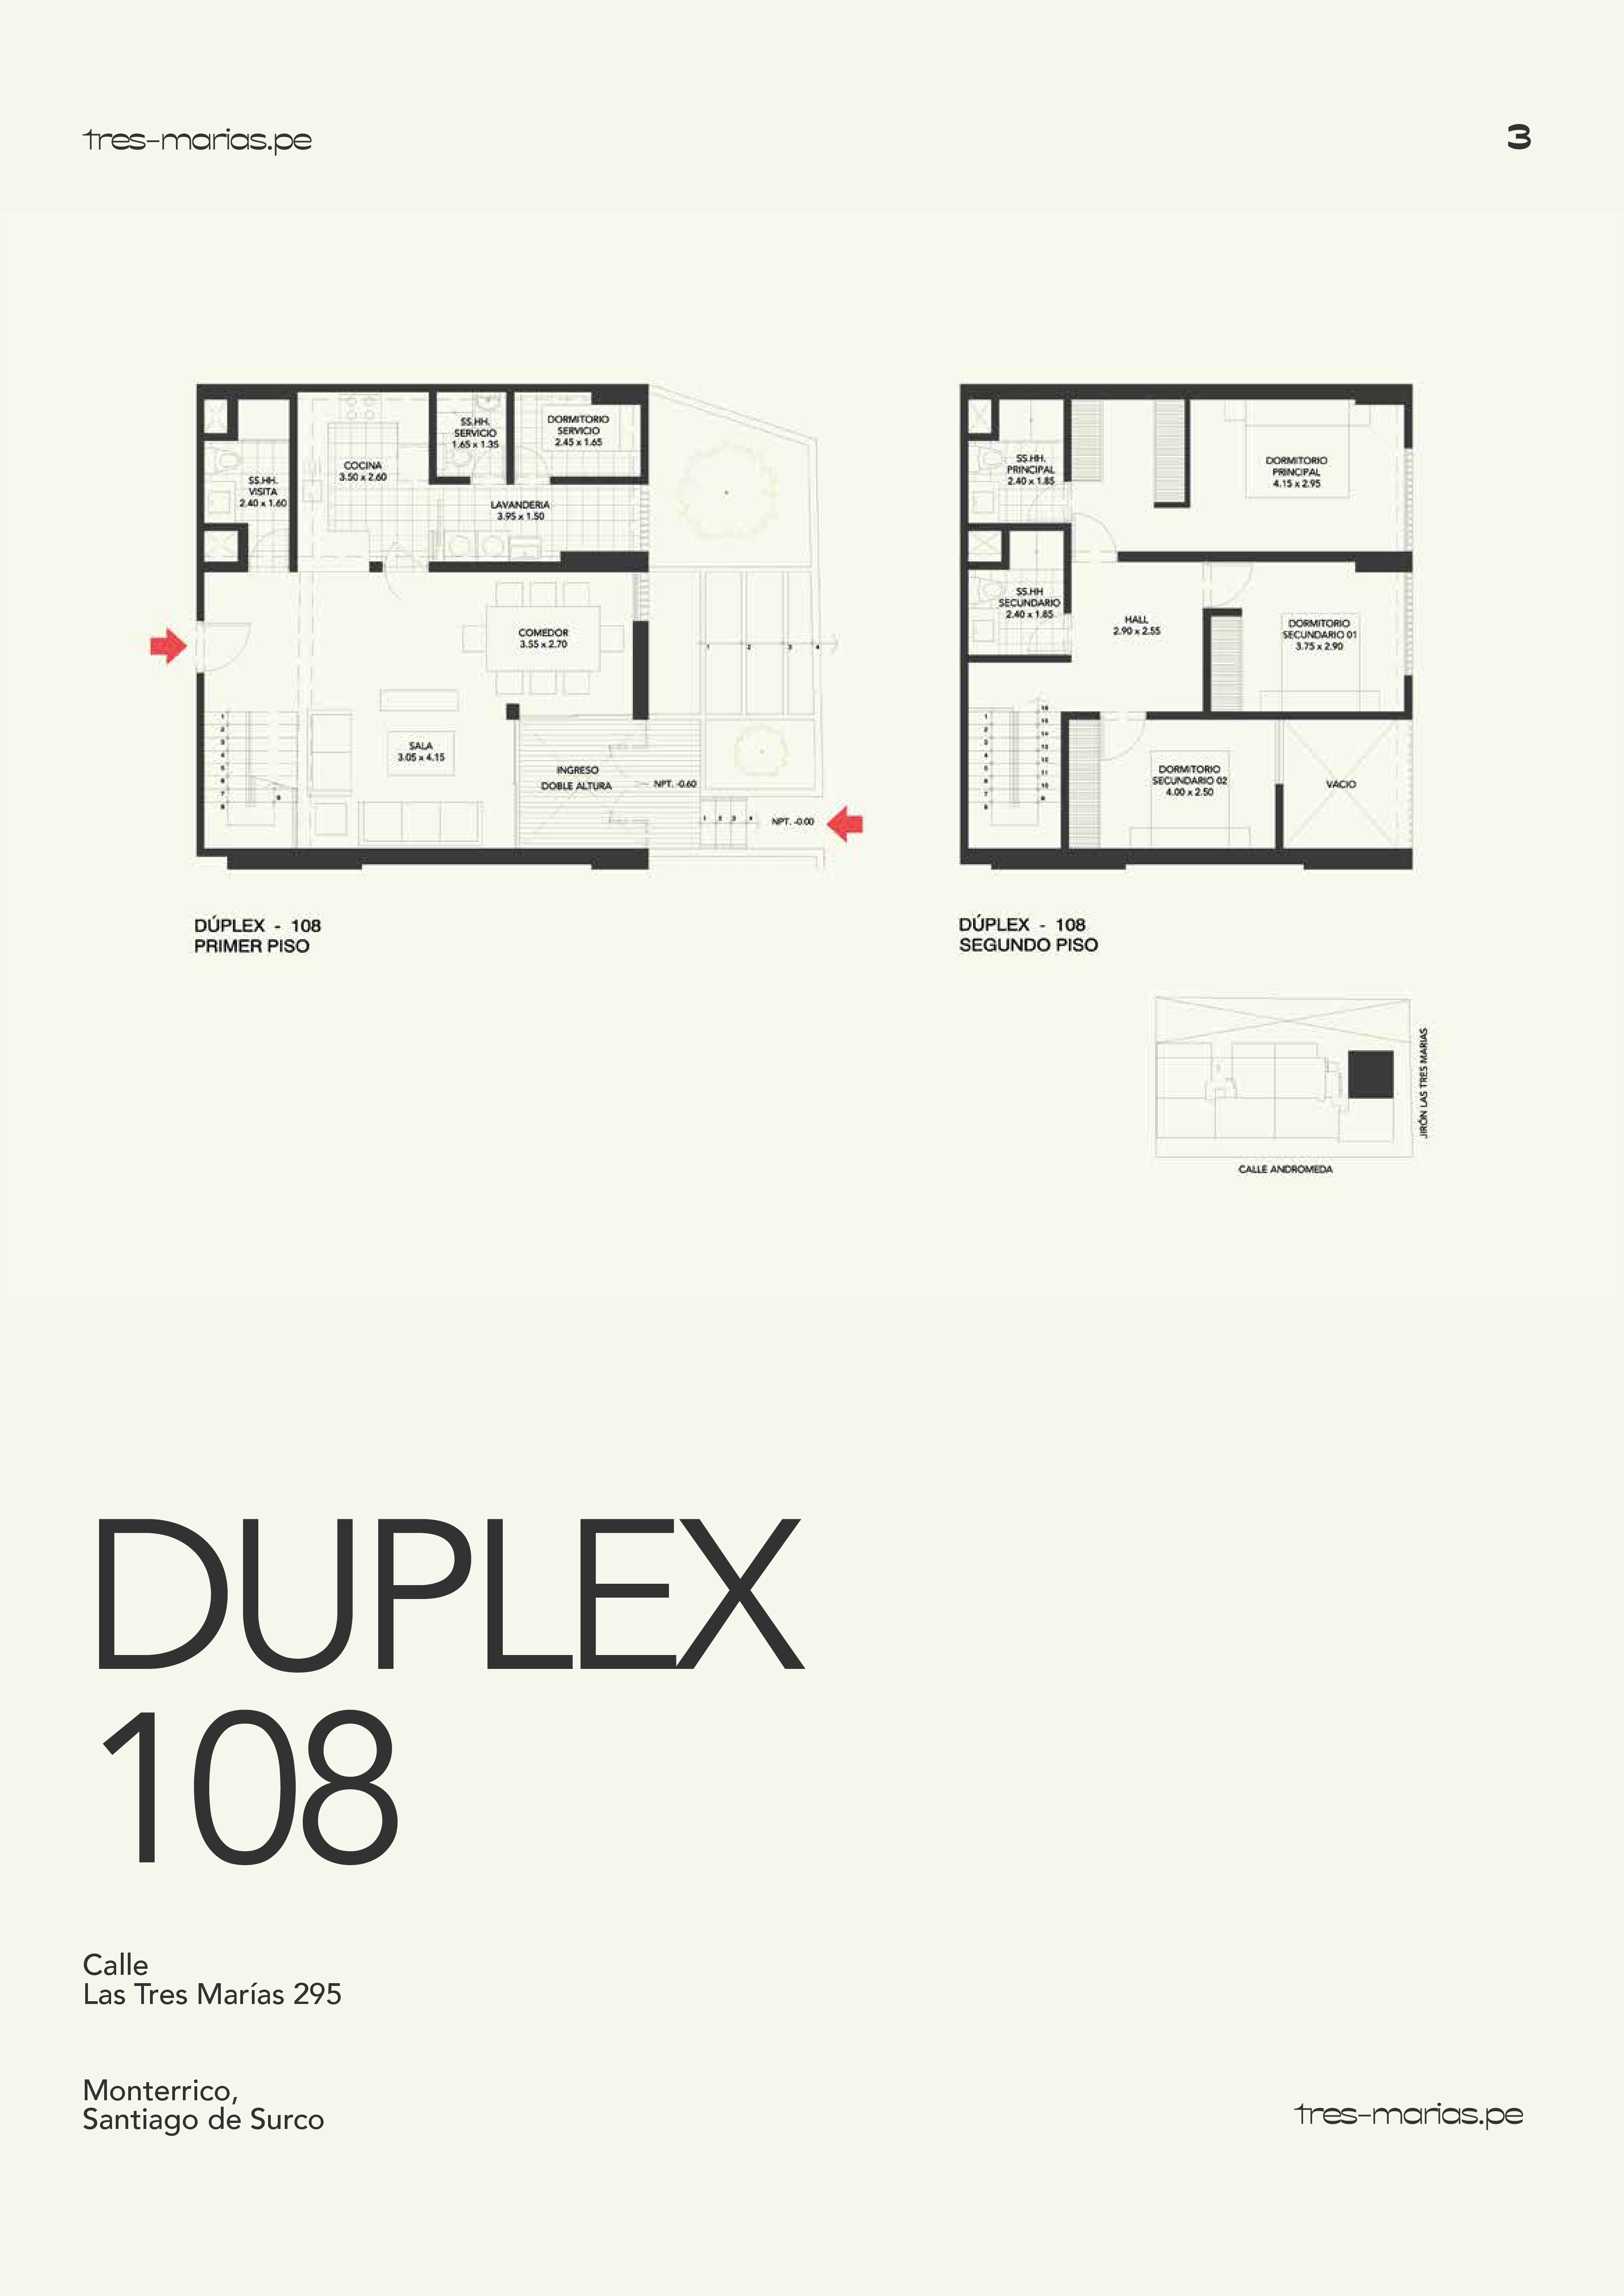 Duplex 108